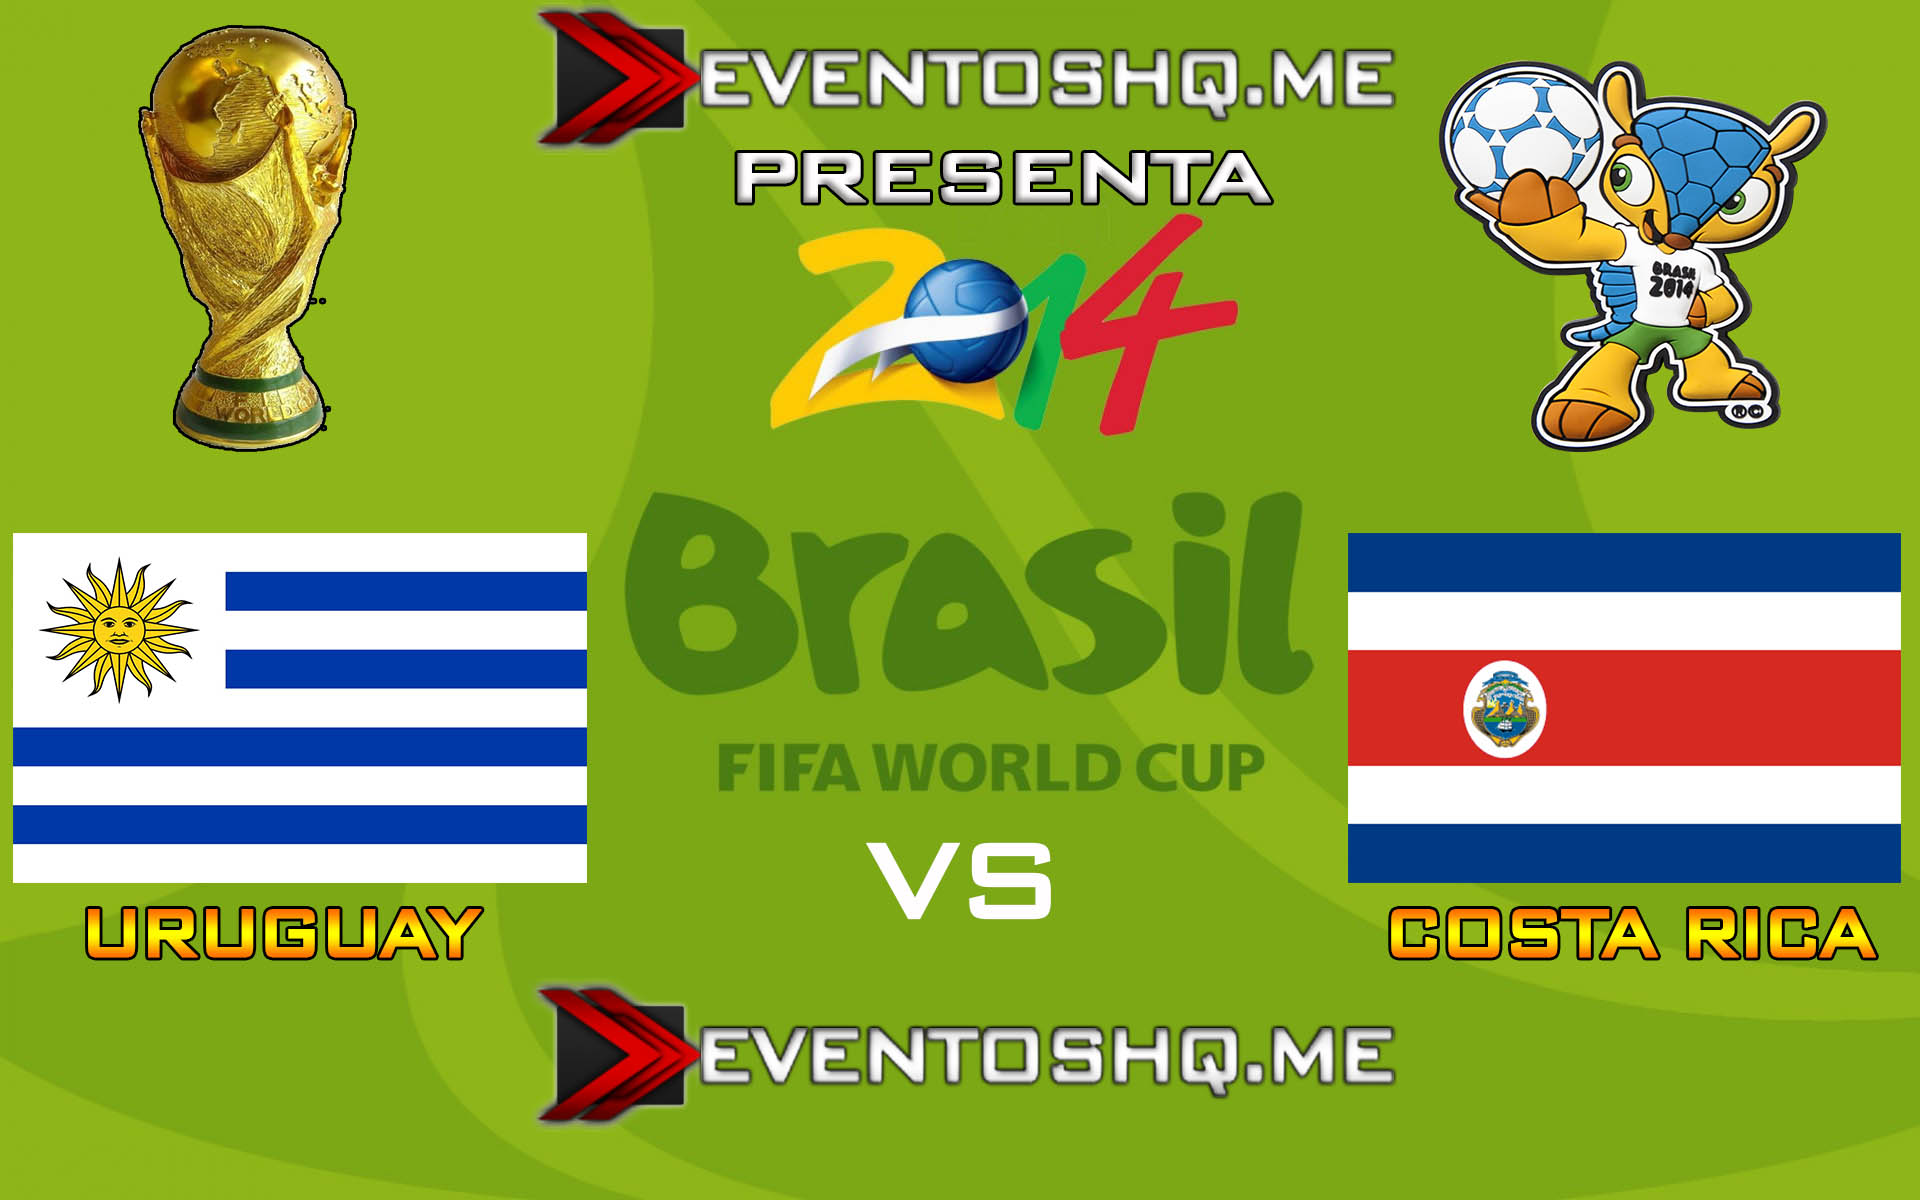 Ver en Vivo Uruguay vs Costa Rica Mundial Brasil 2014 www.eventoshq.me